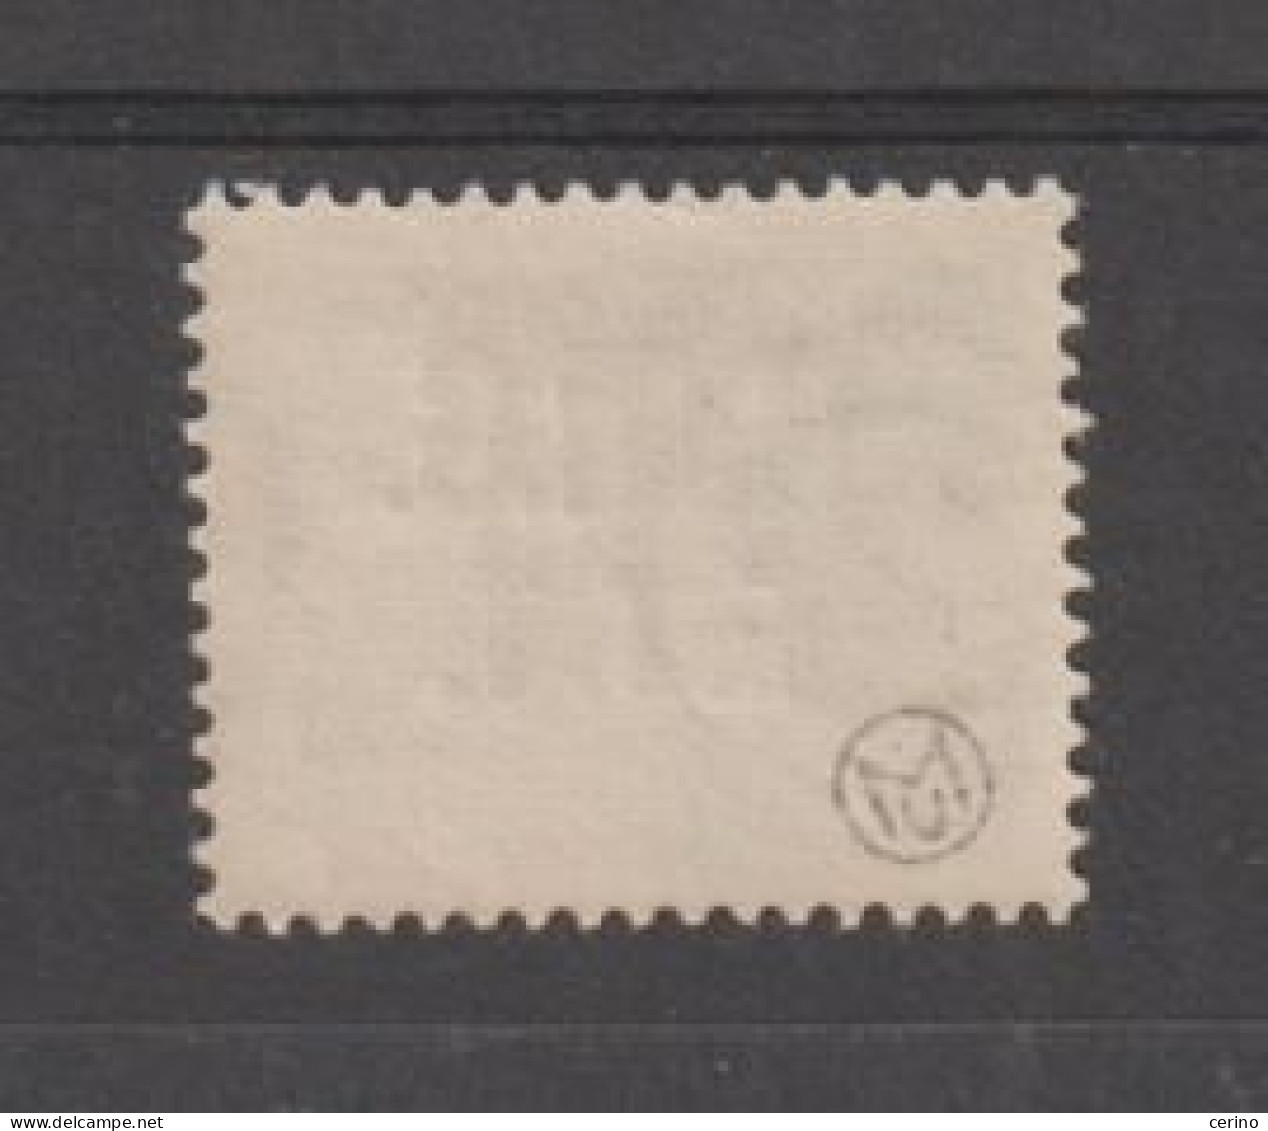 TRIESTE A:  1949  RECAPITO  AUTORIZZATO  -  £. 15  VIOLETTO  N. -  CENTRATURA  PERFETTA  -  TIMBRETTO  MU  -  SASS. 3 - Revenue Stamps